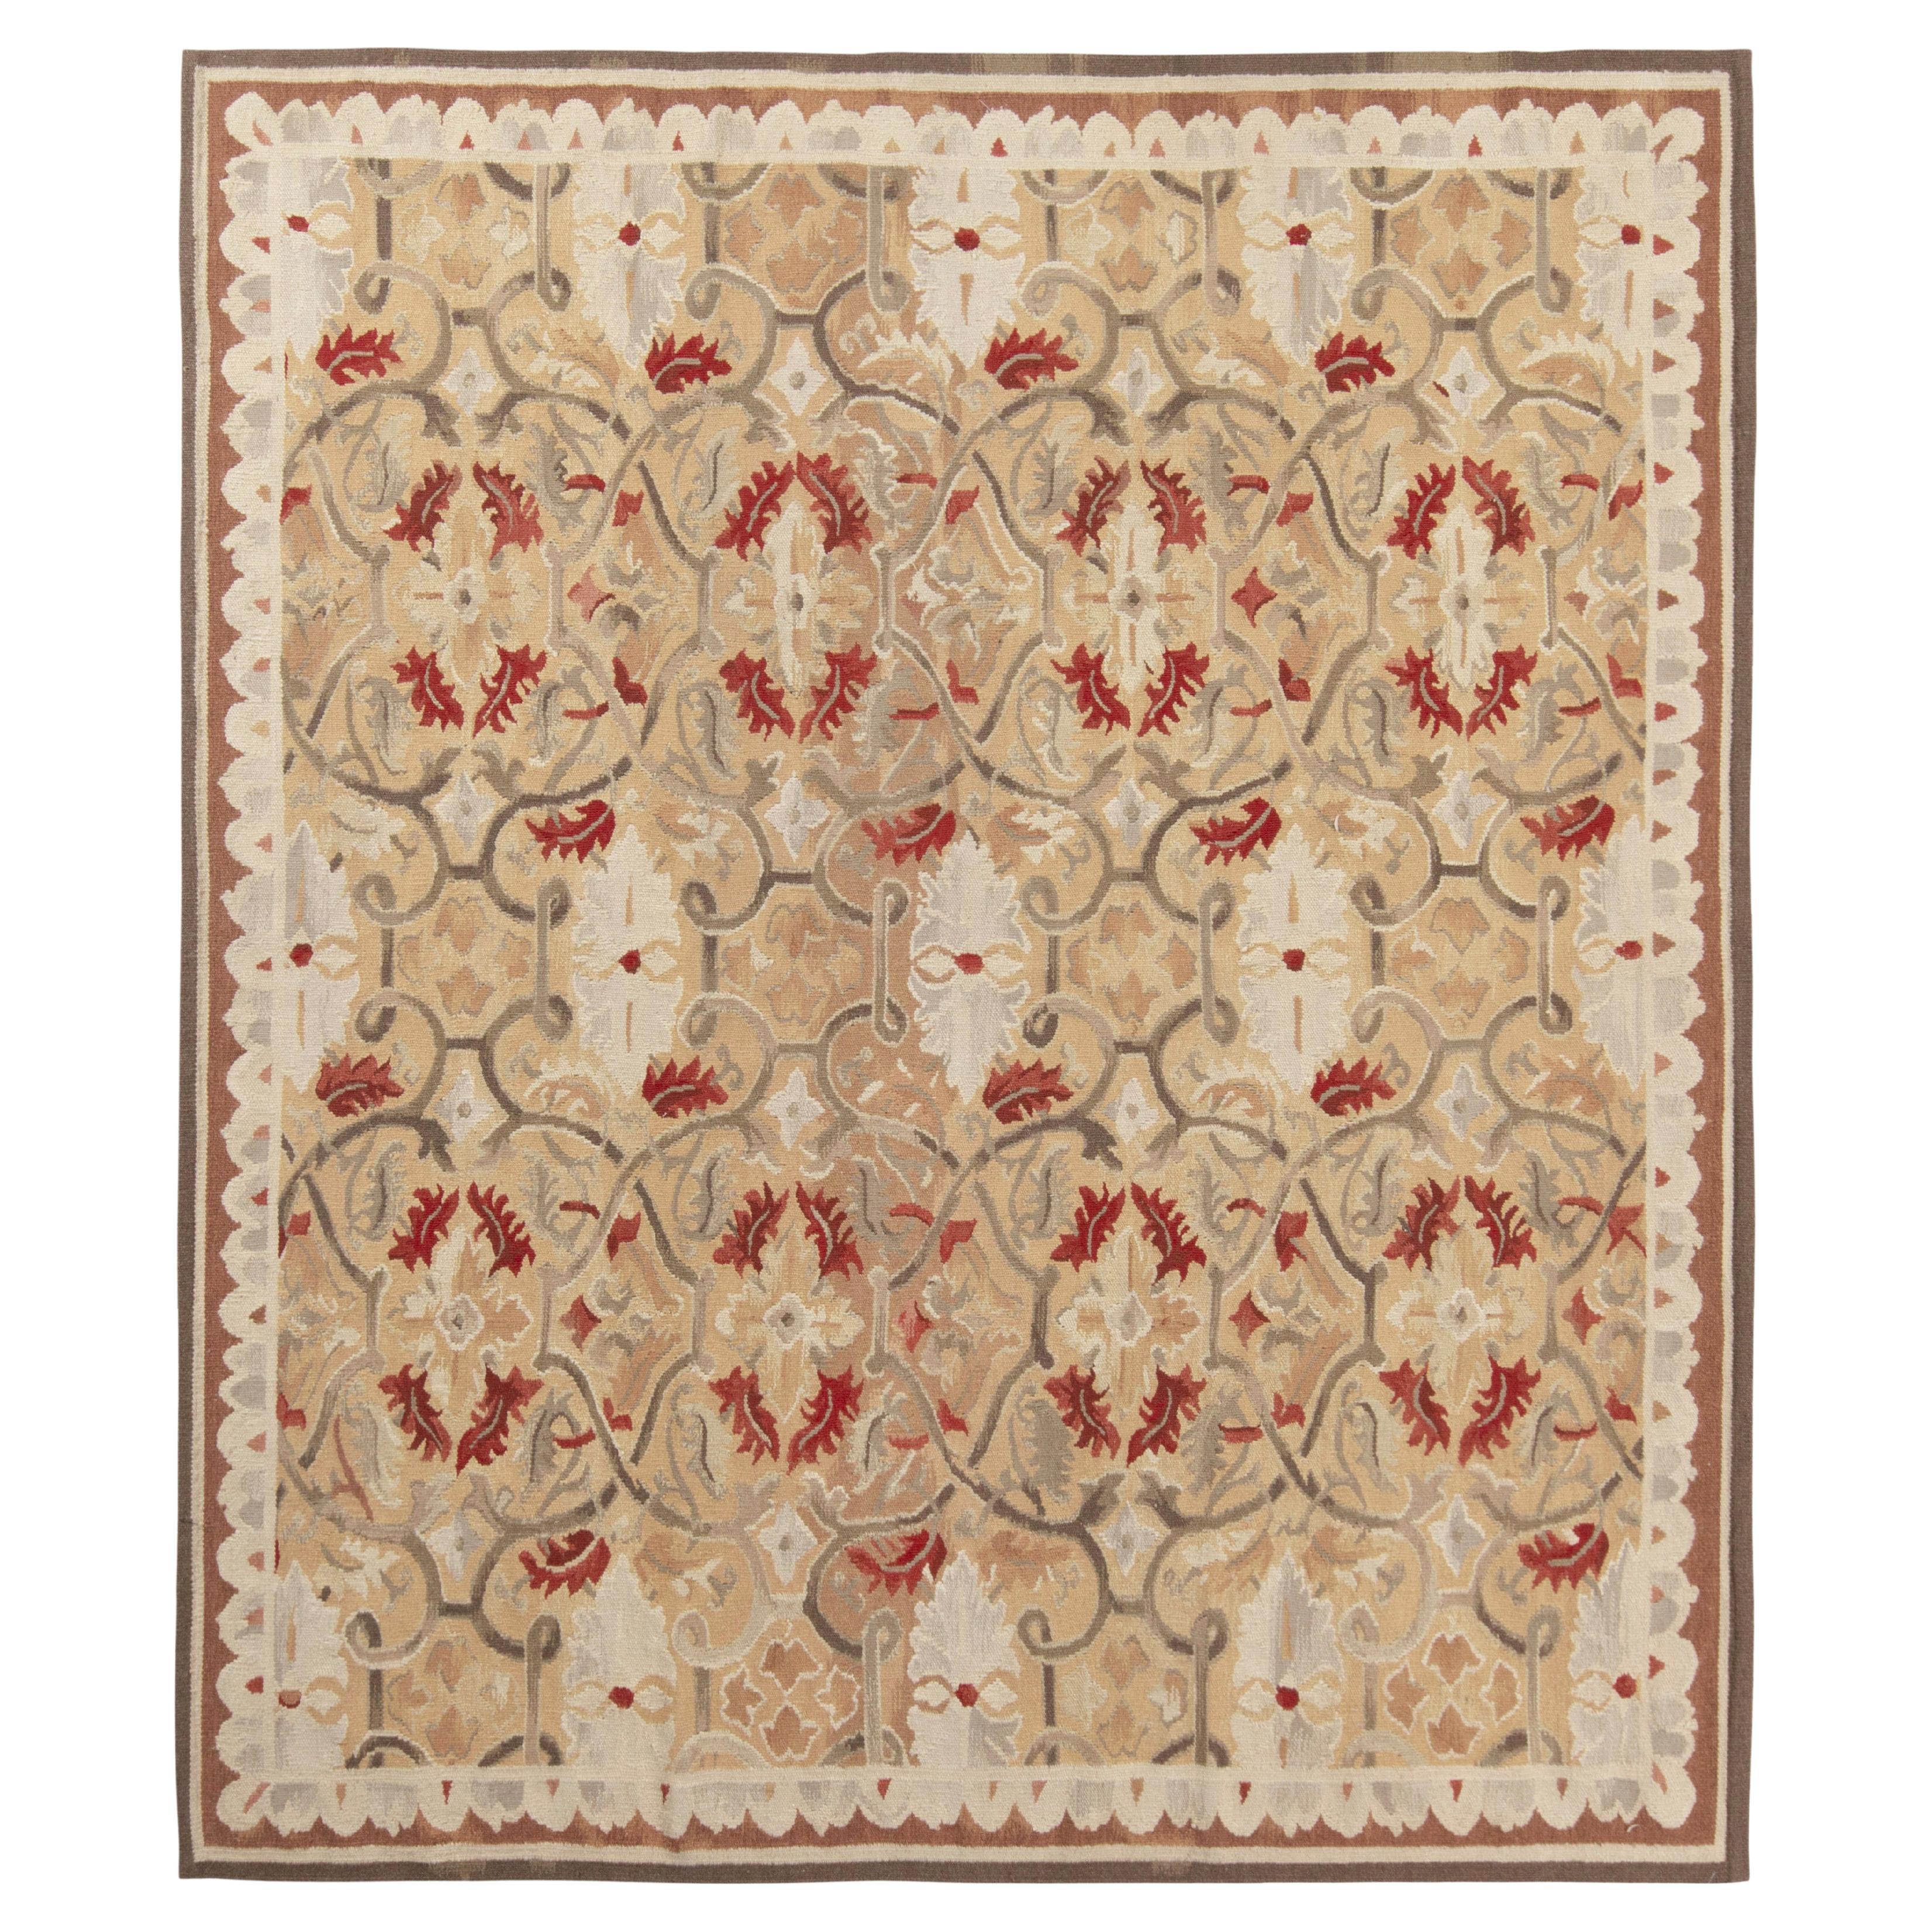 Rug & Kilim's Aubusson Teppich in Flachgewebe, Beige, Grau und Rot mit Blumenmustern